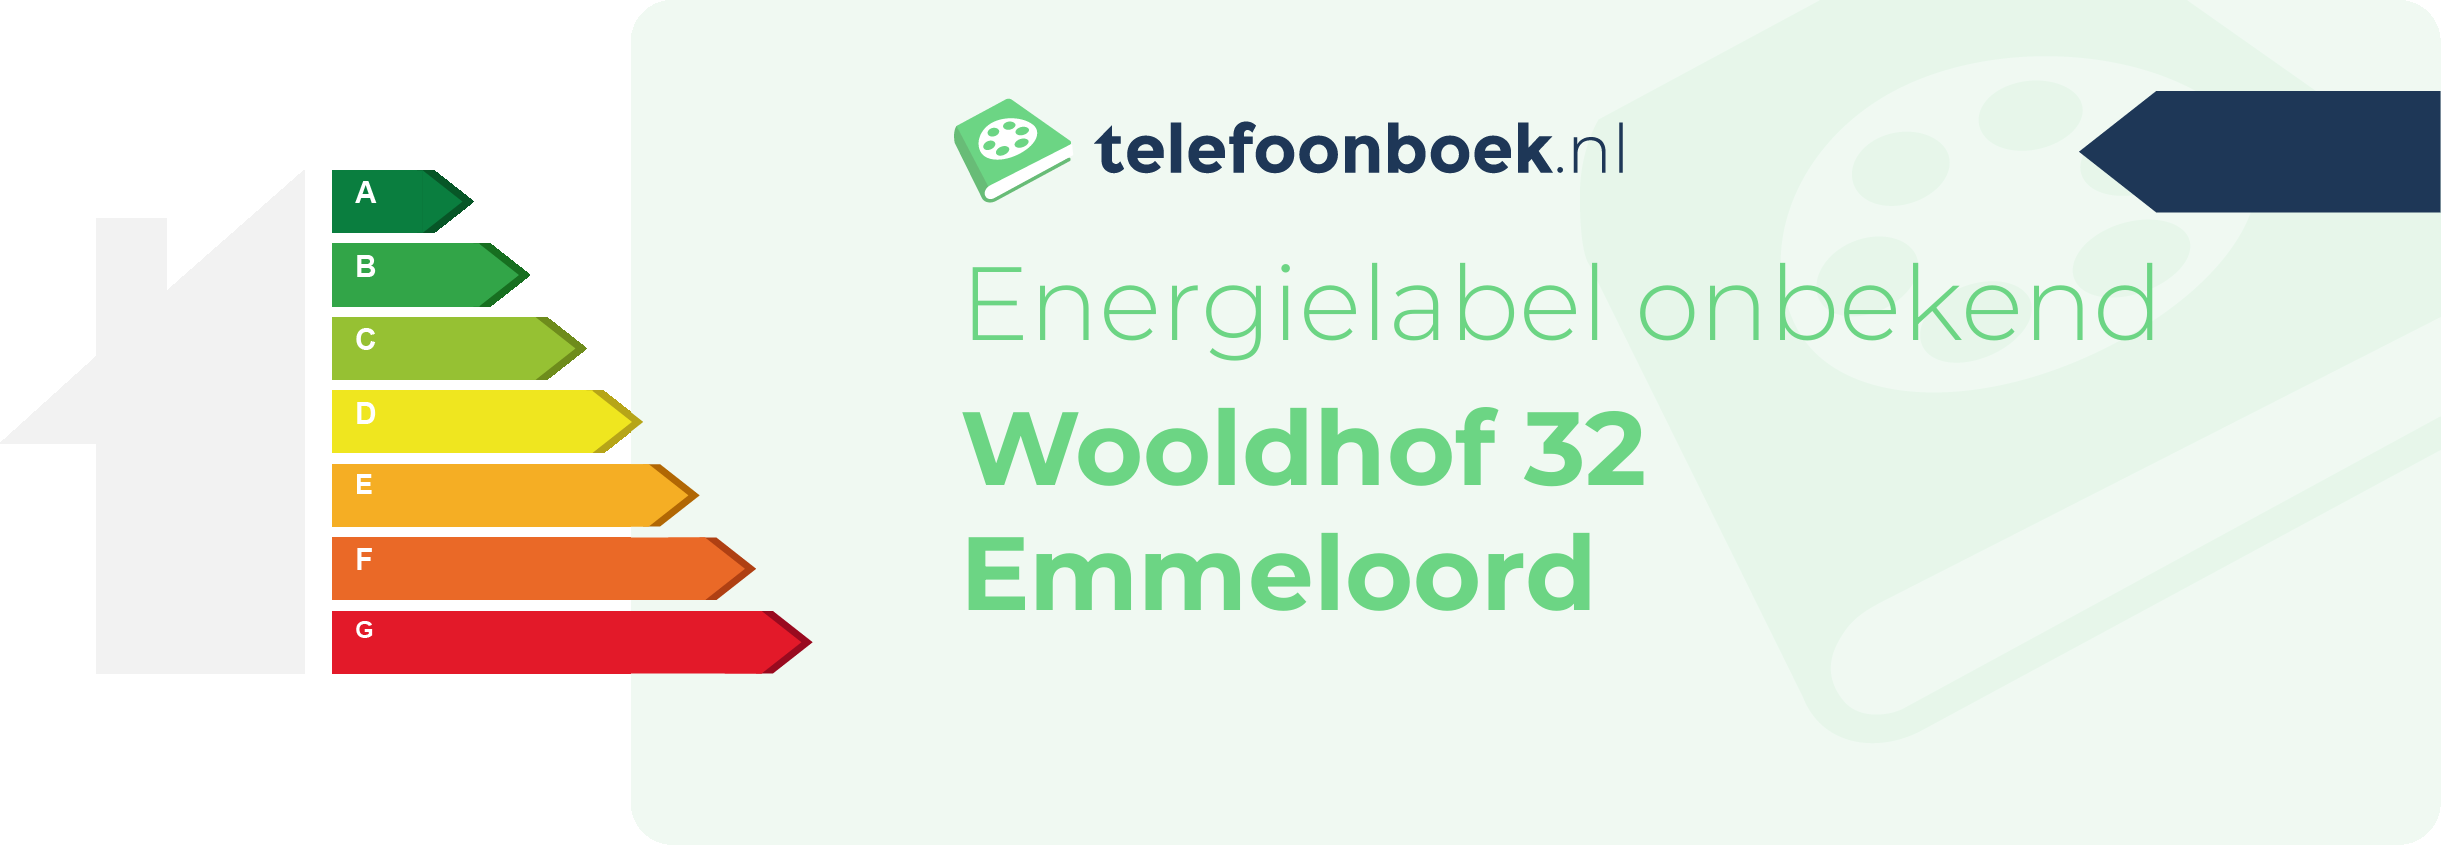 Energielabel Wooldhof 32 Emmeloord